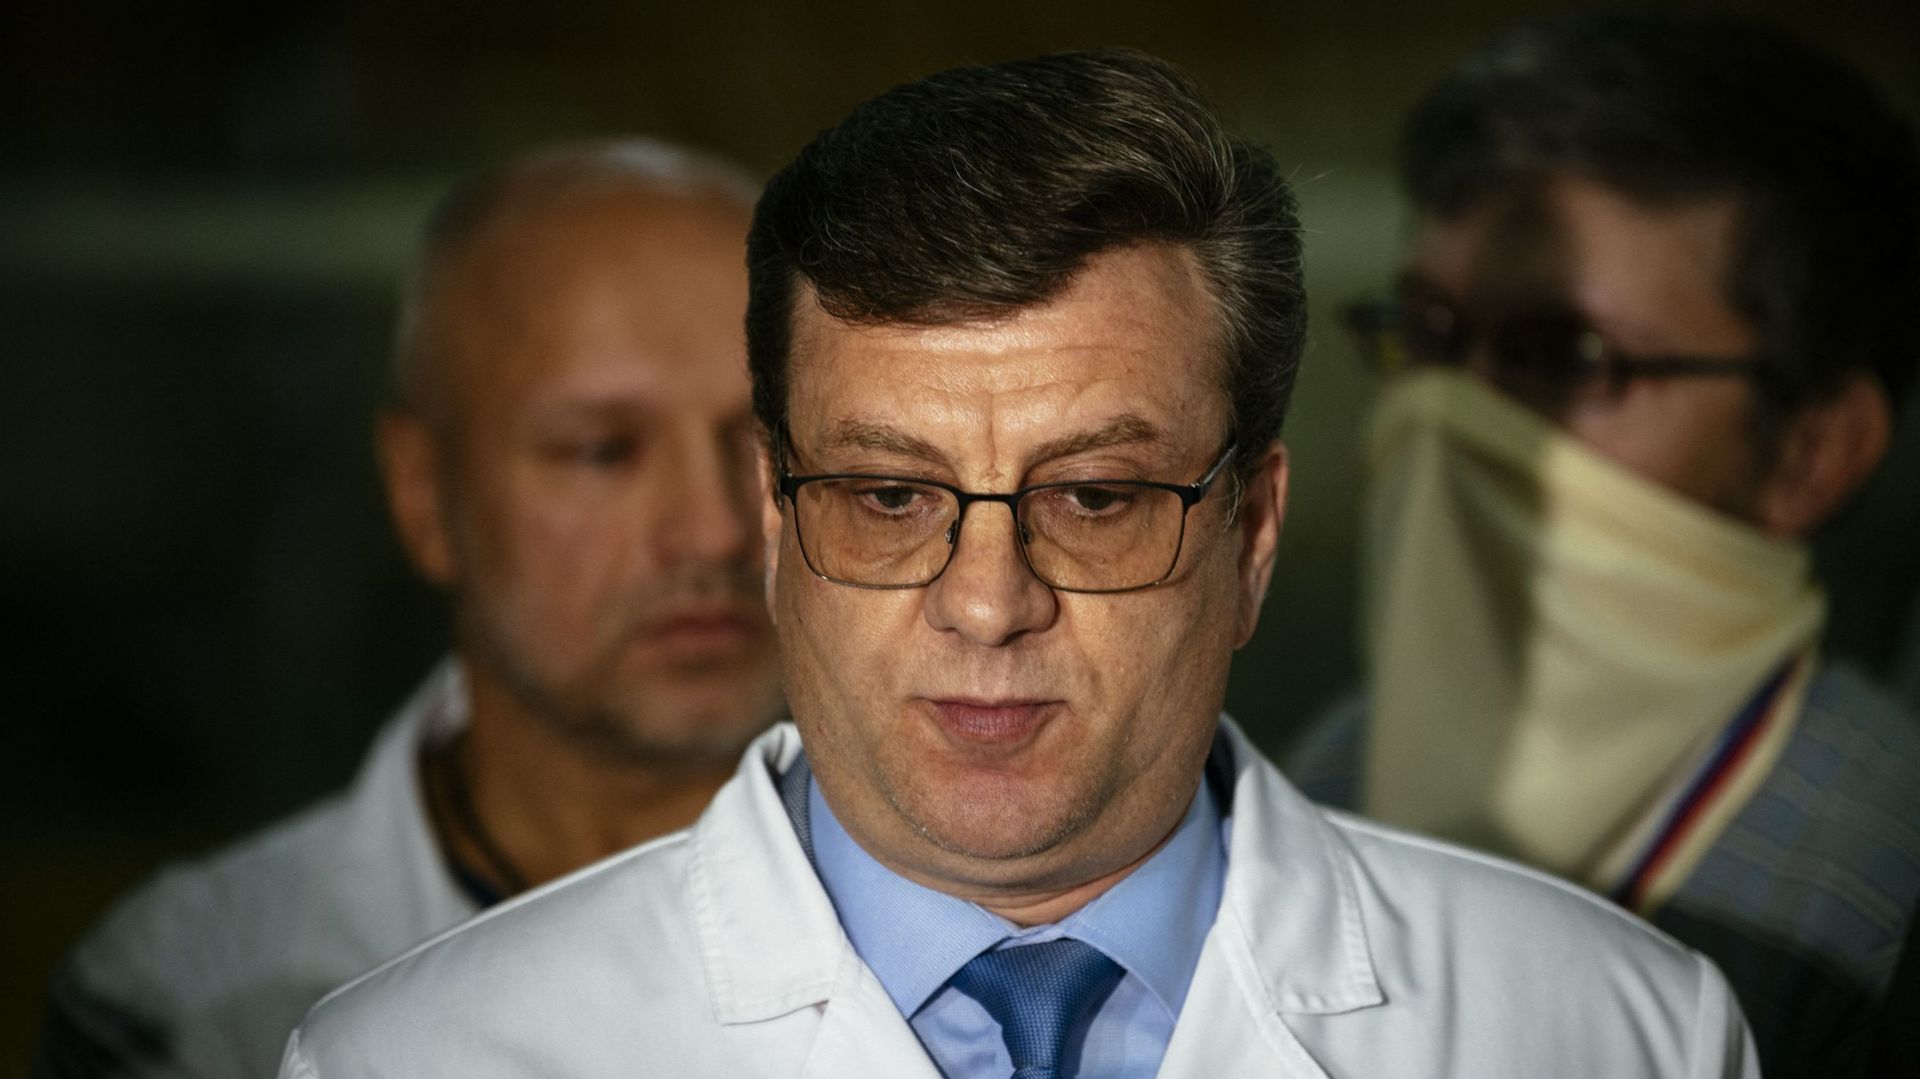 Alexander Murakhovsky, médecin en chef de l'hôpital d'urgence n° 1 d'Omsk, où Alexei Navalny a été admis après être tombé malade dans ce que sa porte-parole a déclaré être un empoisonnement présumé, s'adresse aux médias à Omsk le 21 août 2020